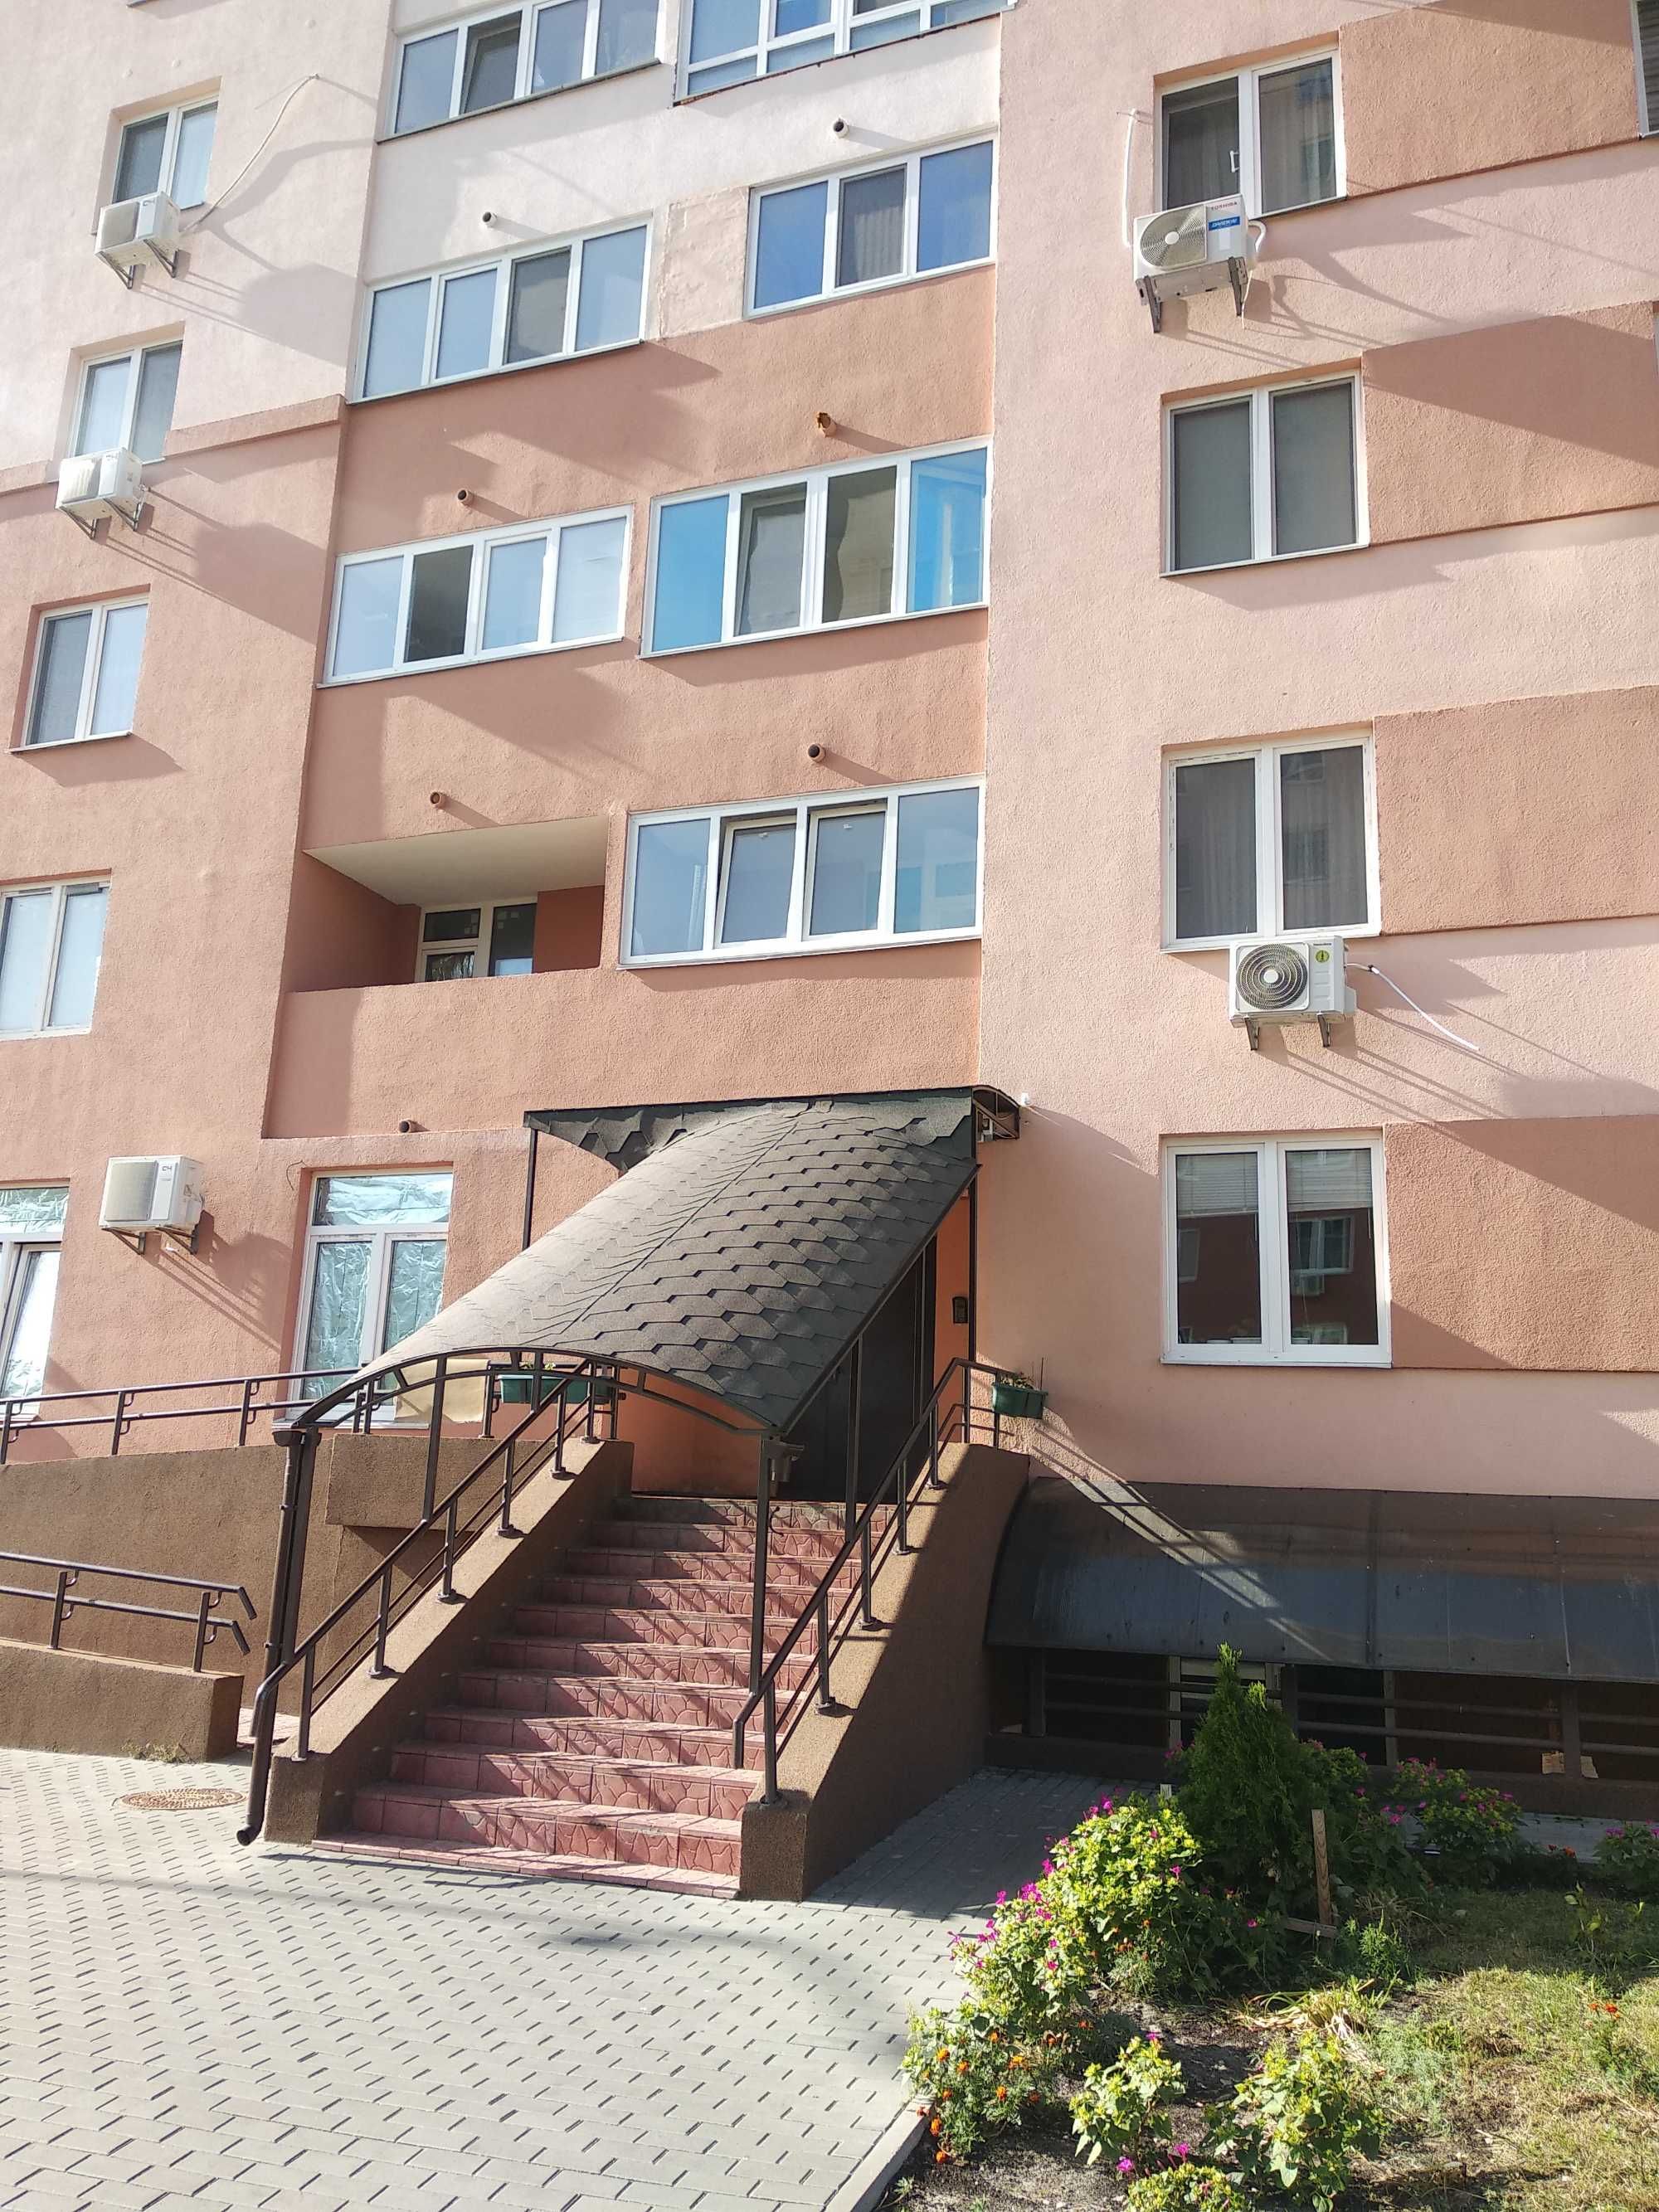 Продам 1-к квартиры в новом доме Позняки, ул.Крушельницкой 15а.